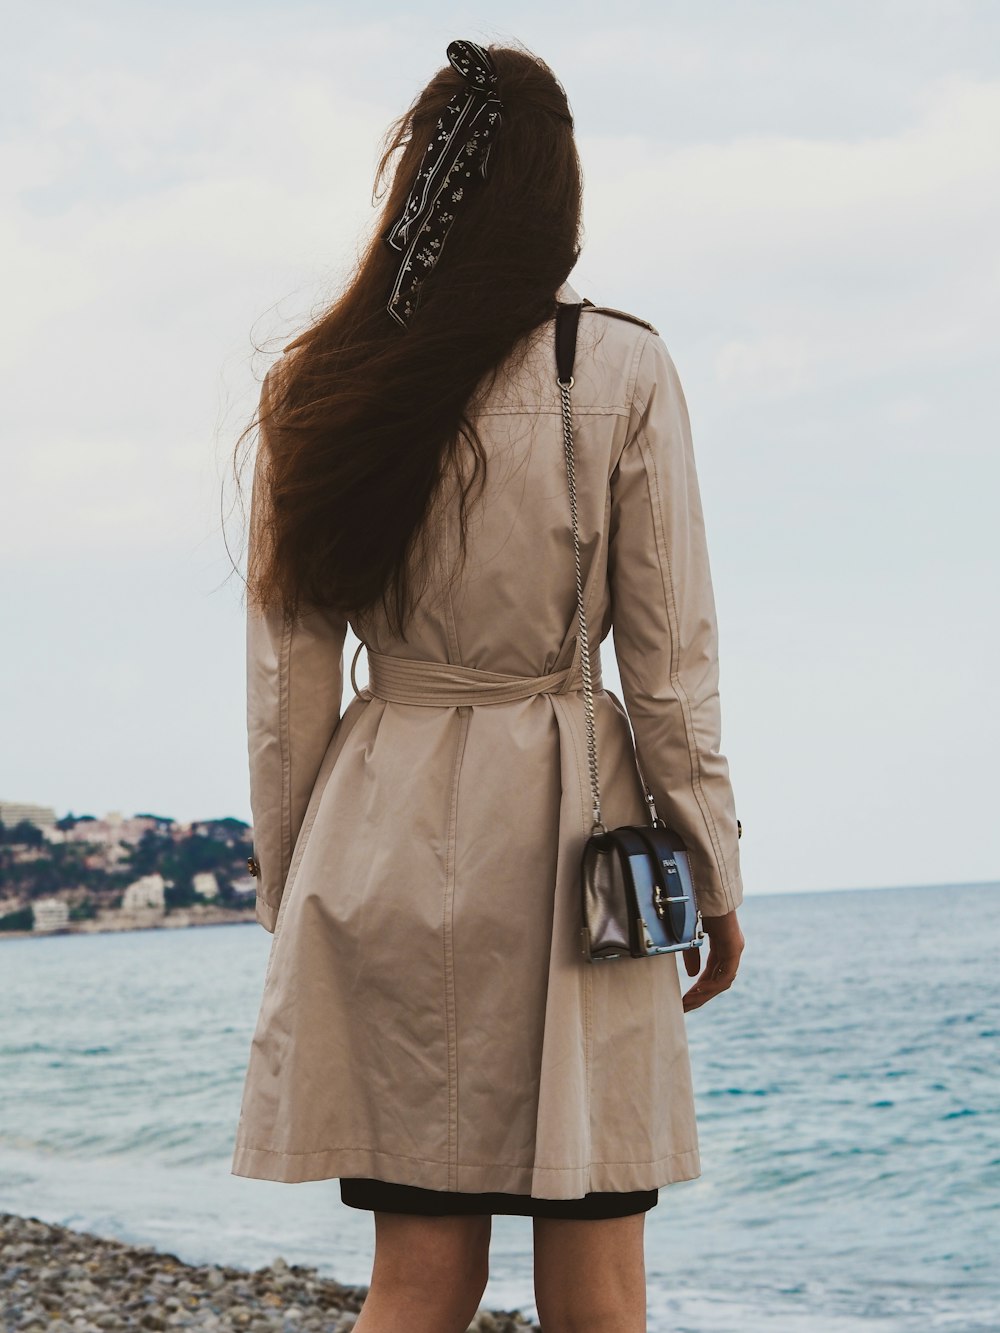 mulher no casaco marrom em pé perto do mar durante o dia